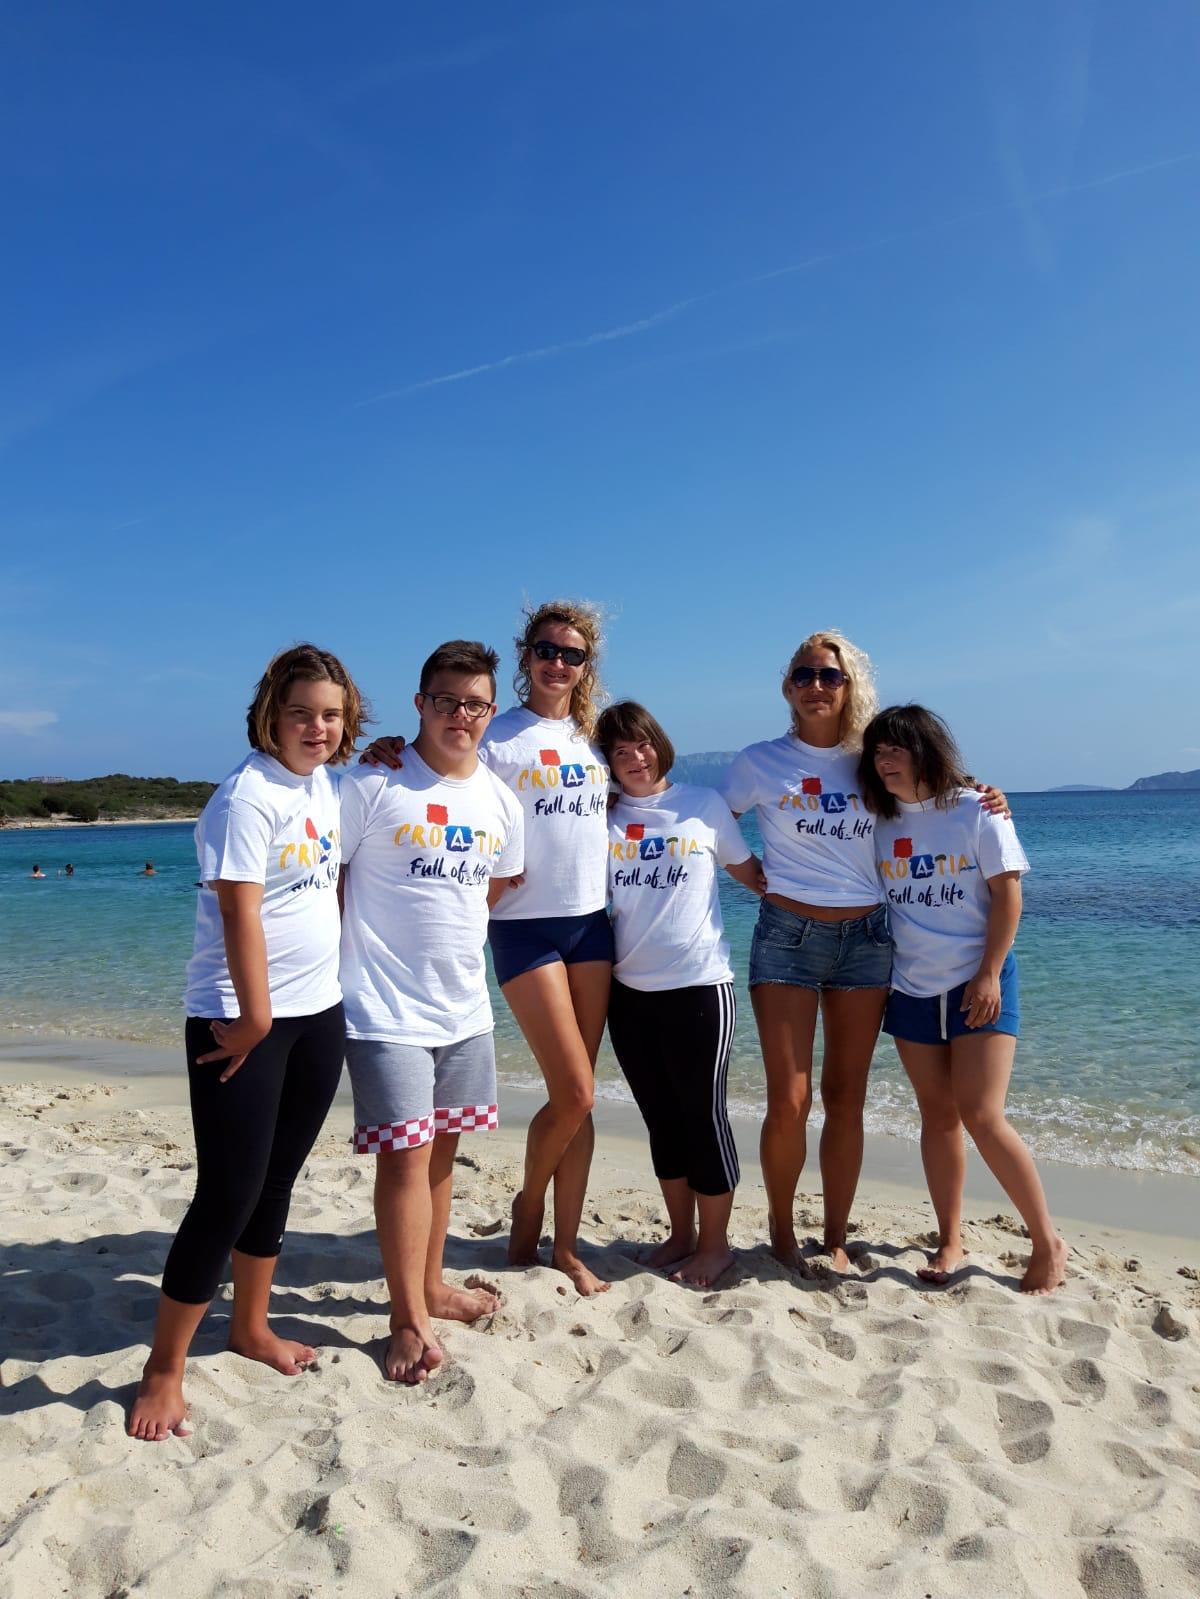 CRO reprezentacija plivača s Down sindromom na pješčanoj plaži Sardinije gdje je održano EP